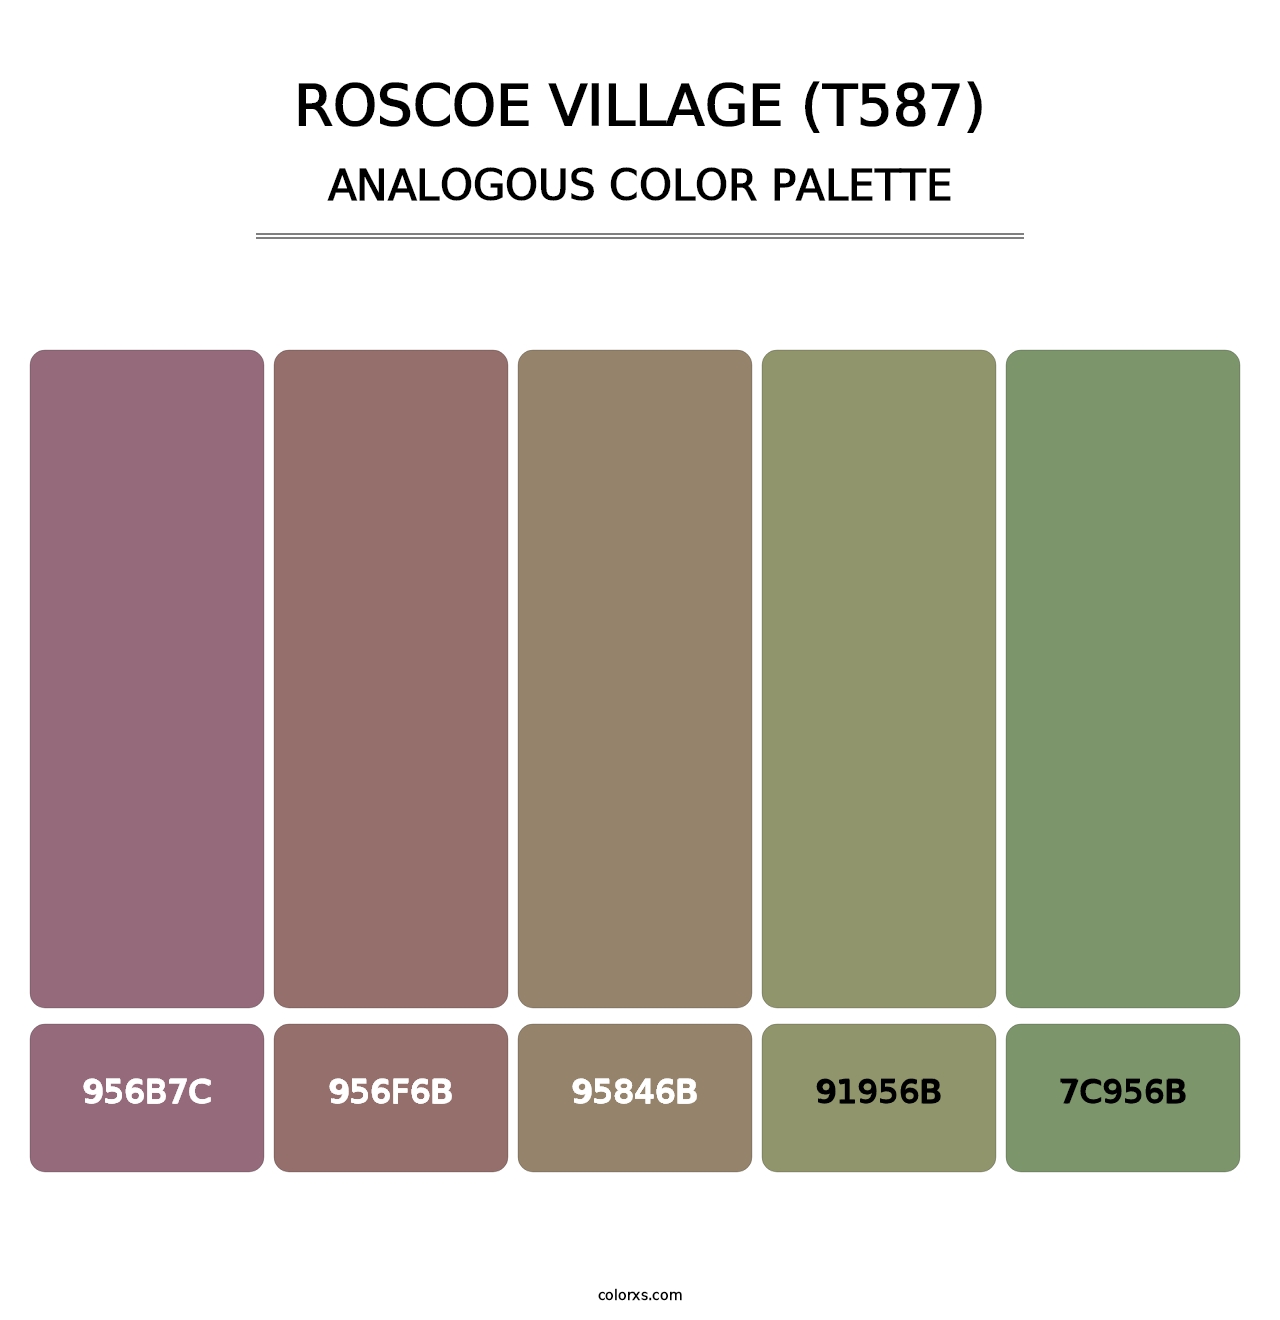 Roscoe Village (T587) - Analogous Color Palette